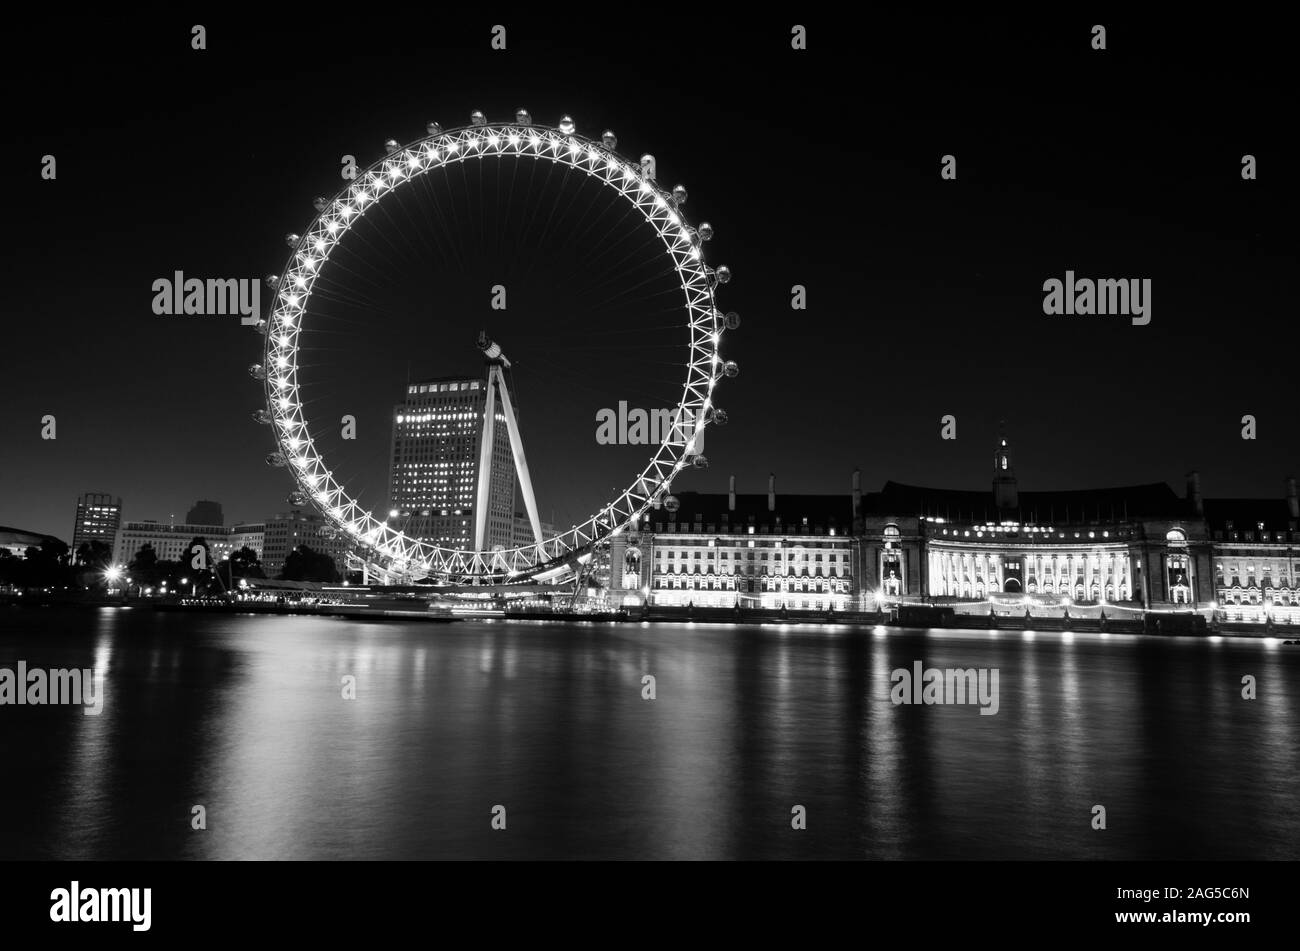 Belle photo d'une grande roue près des bâtiments de la ville n Londres en noir et blanc Banque D'Images